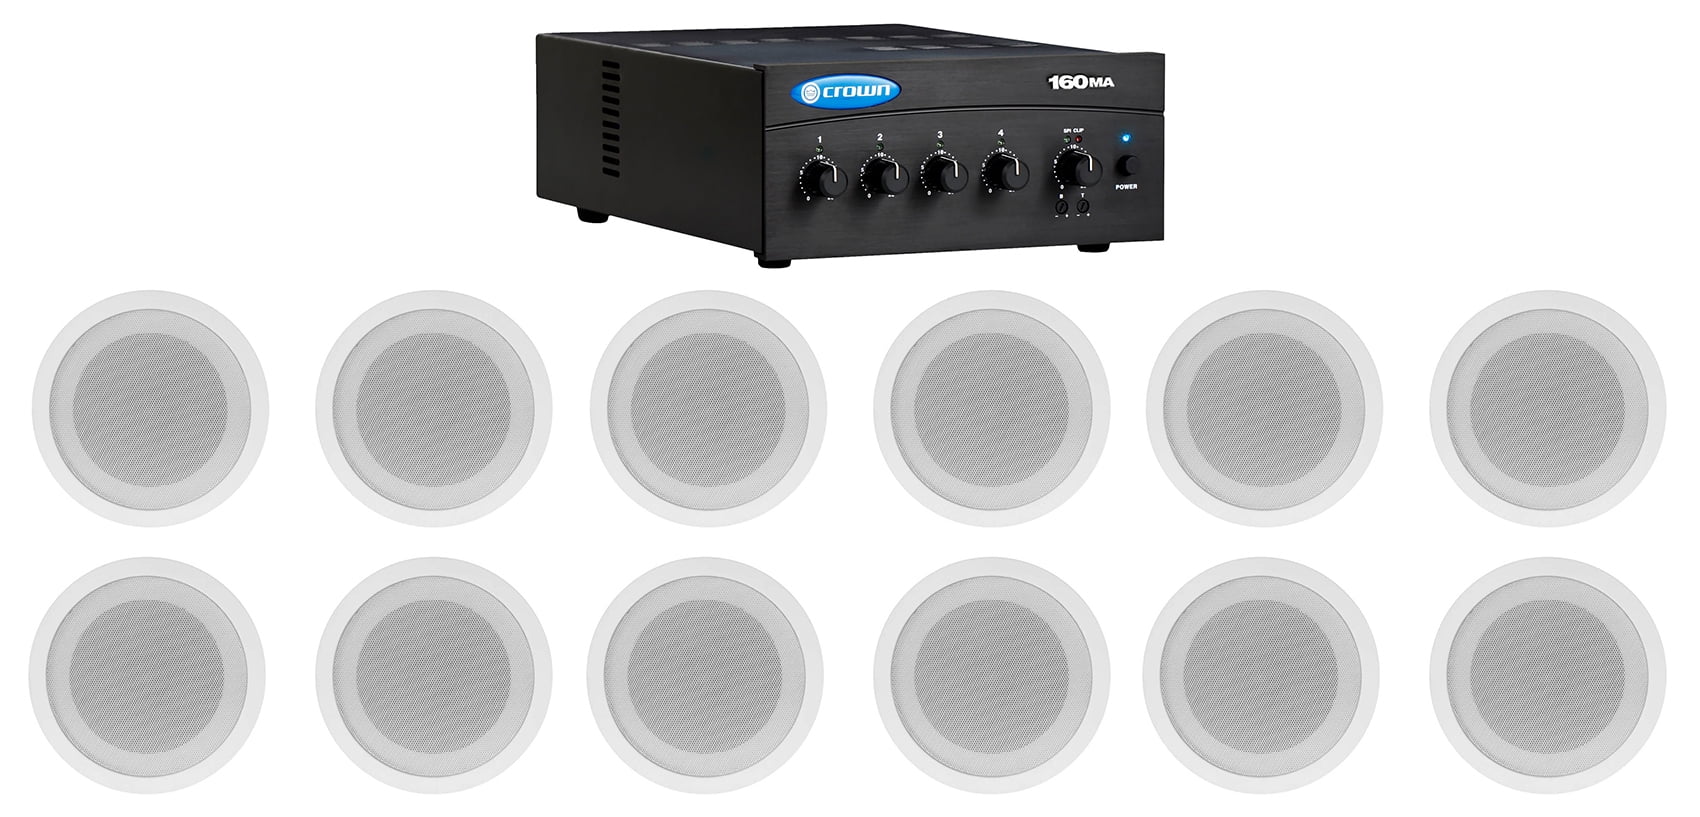 MUSIC BOX SOUND SYSTEM 50 watt MATCHING Speaker OMNI 2 ICE CREAM TRUCK 